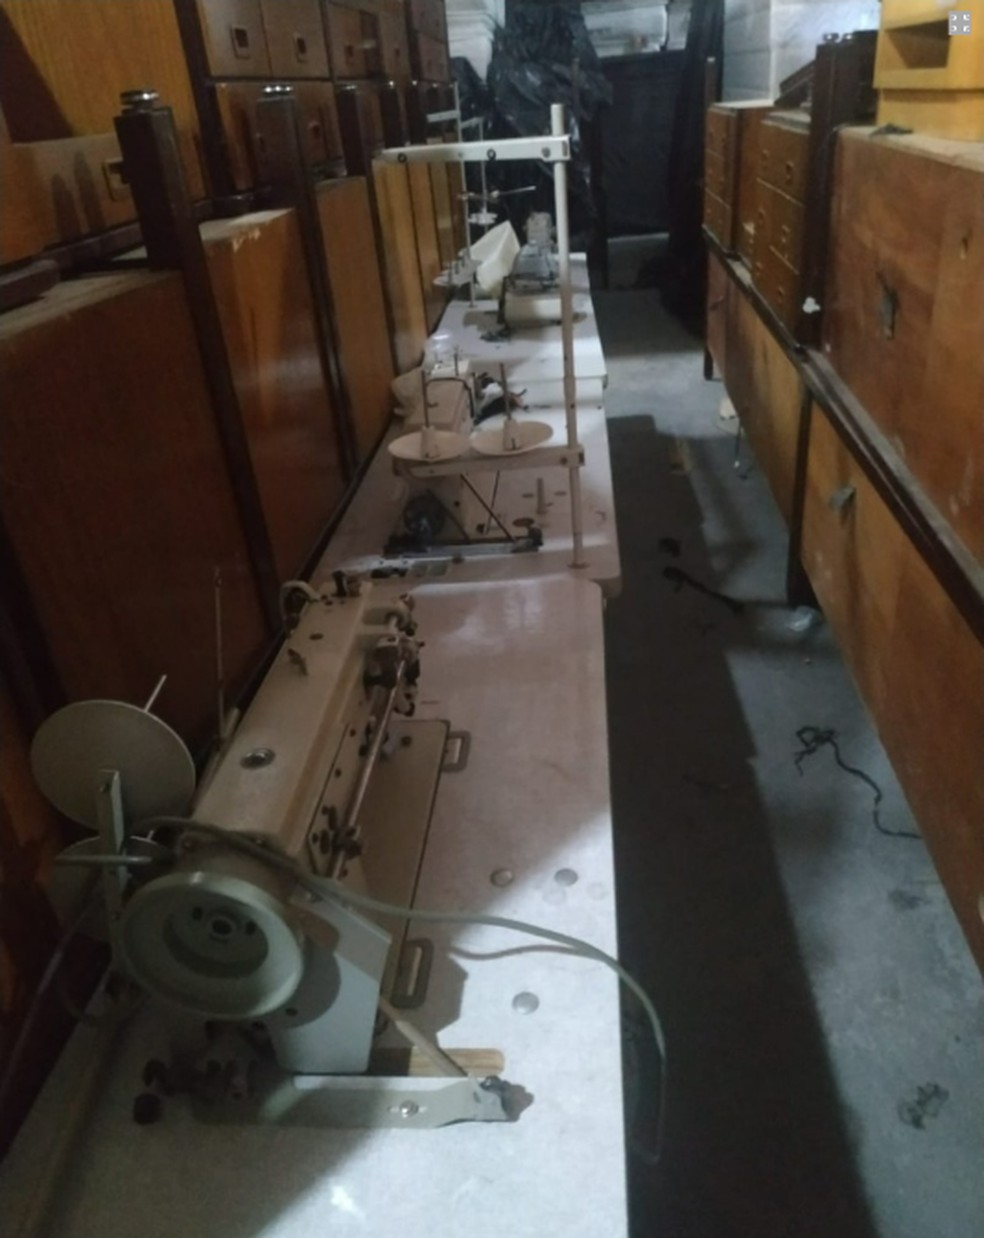 Leilão dos itens do Maksoud Plaza: cinco máquinas de costura foram arrematadas por R$ 3.740, a um preço médio de R$ 748 cada — Foto: Reprodução/FCR Leilões